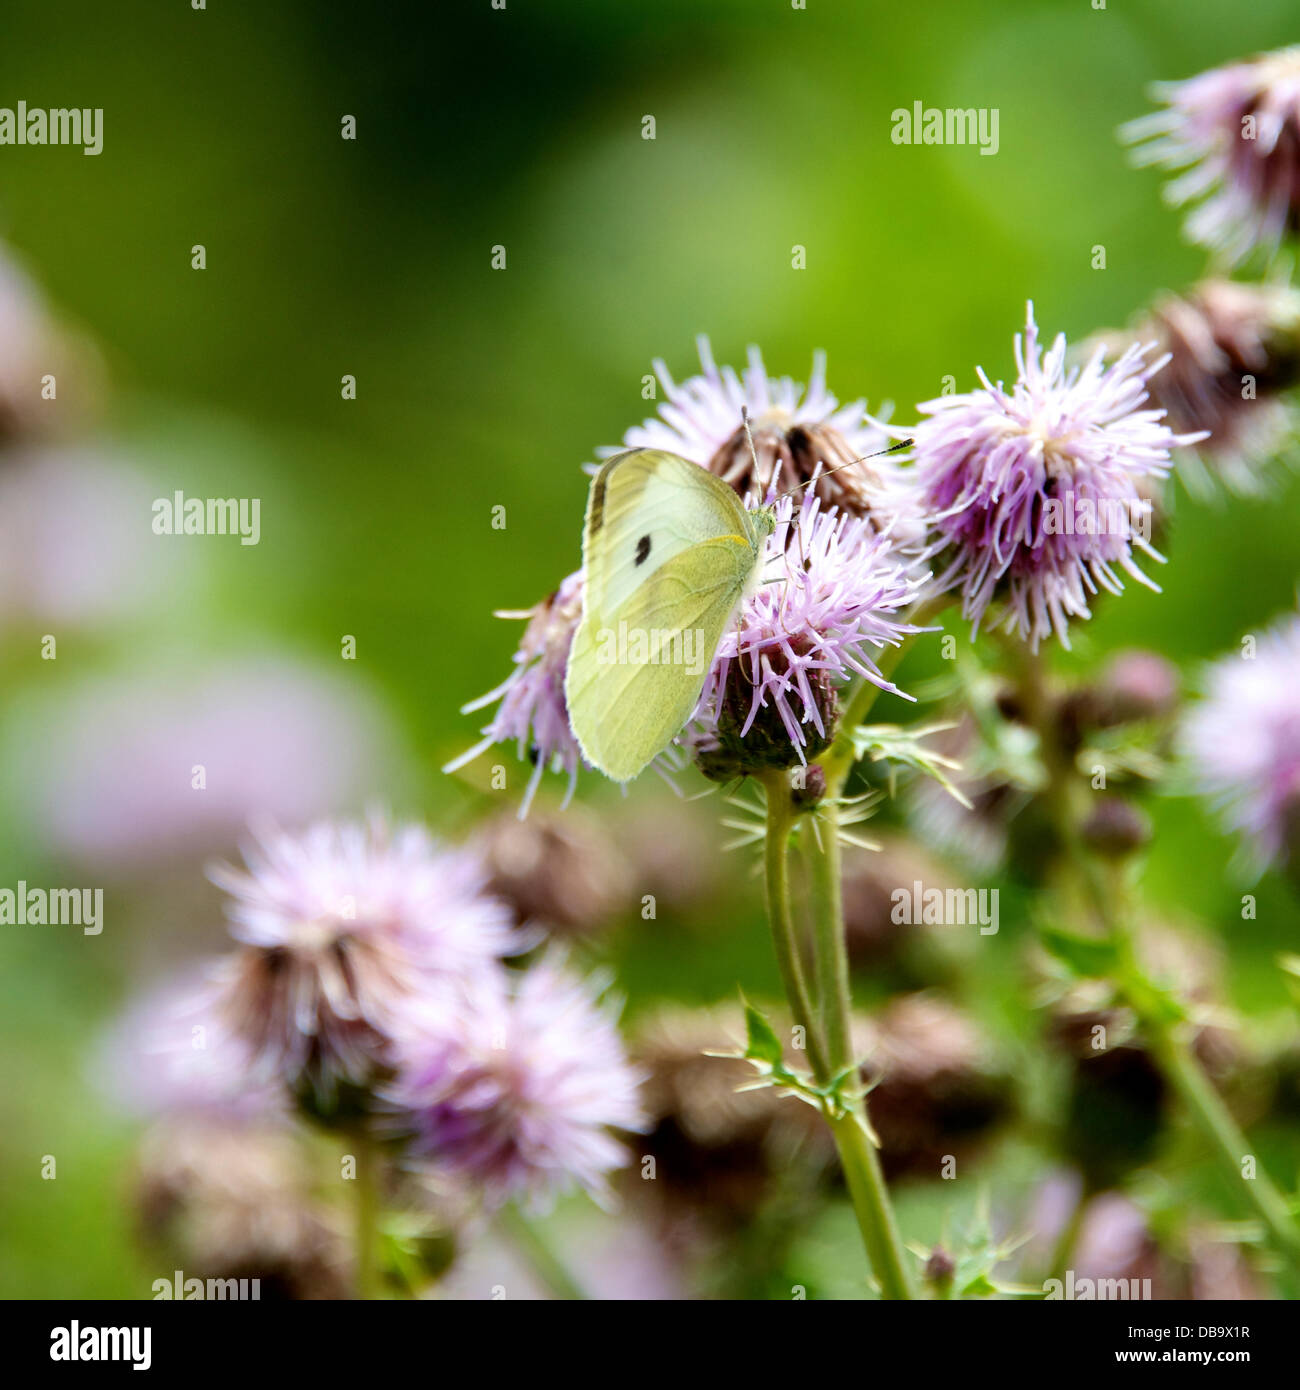 A Betchworth, Surrey, Regno Unito. Il 26 luglio 2013. Una piccola farfalla bianca si appoggia su un fiore di cardo in una zona umida prateria sulle rive del Fiume Mole a Betchworth, Surrey venerdì 26 luglio 2013. Credito: Foto di Lindsay Constable /Alamy Live News Foto Stock